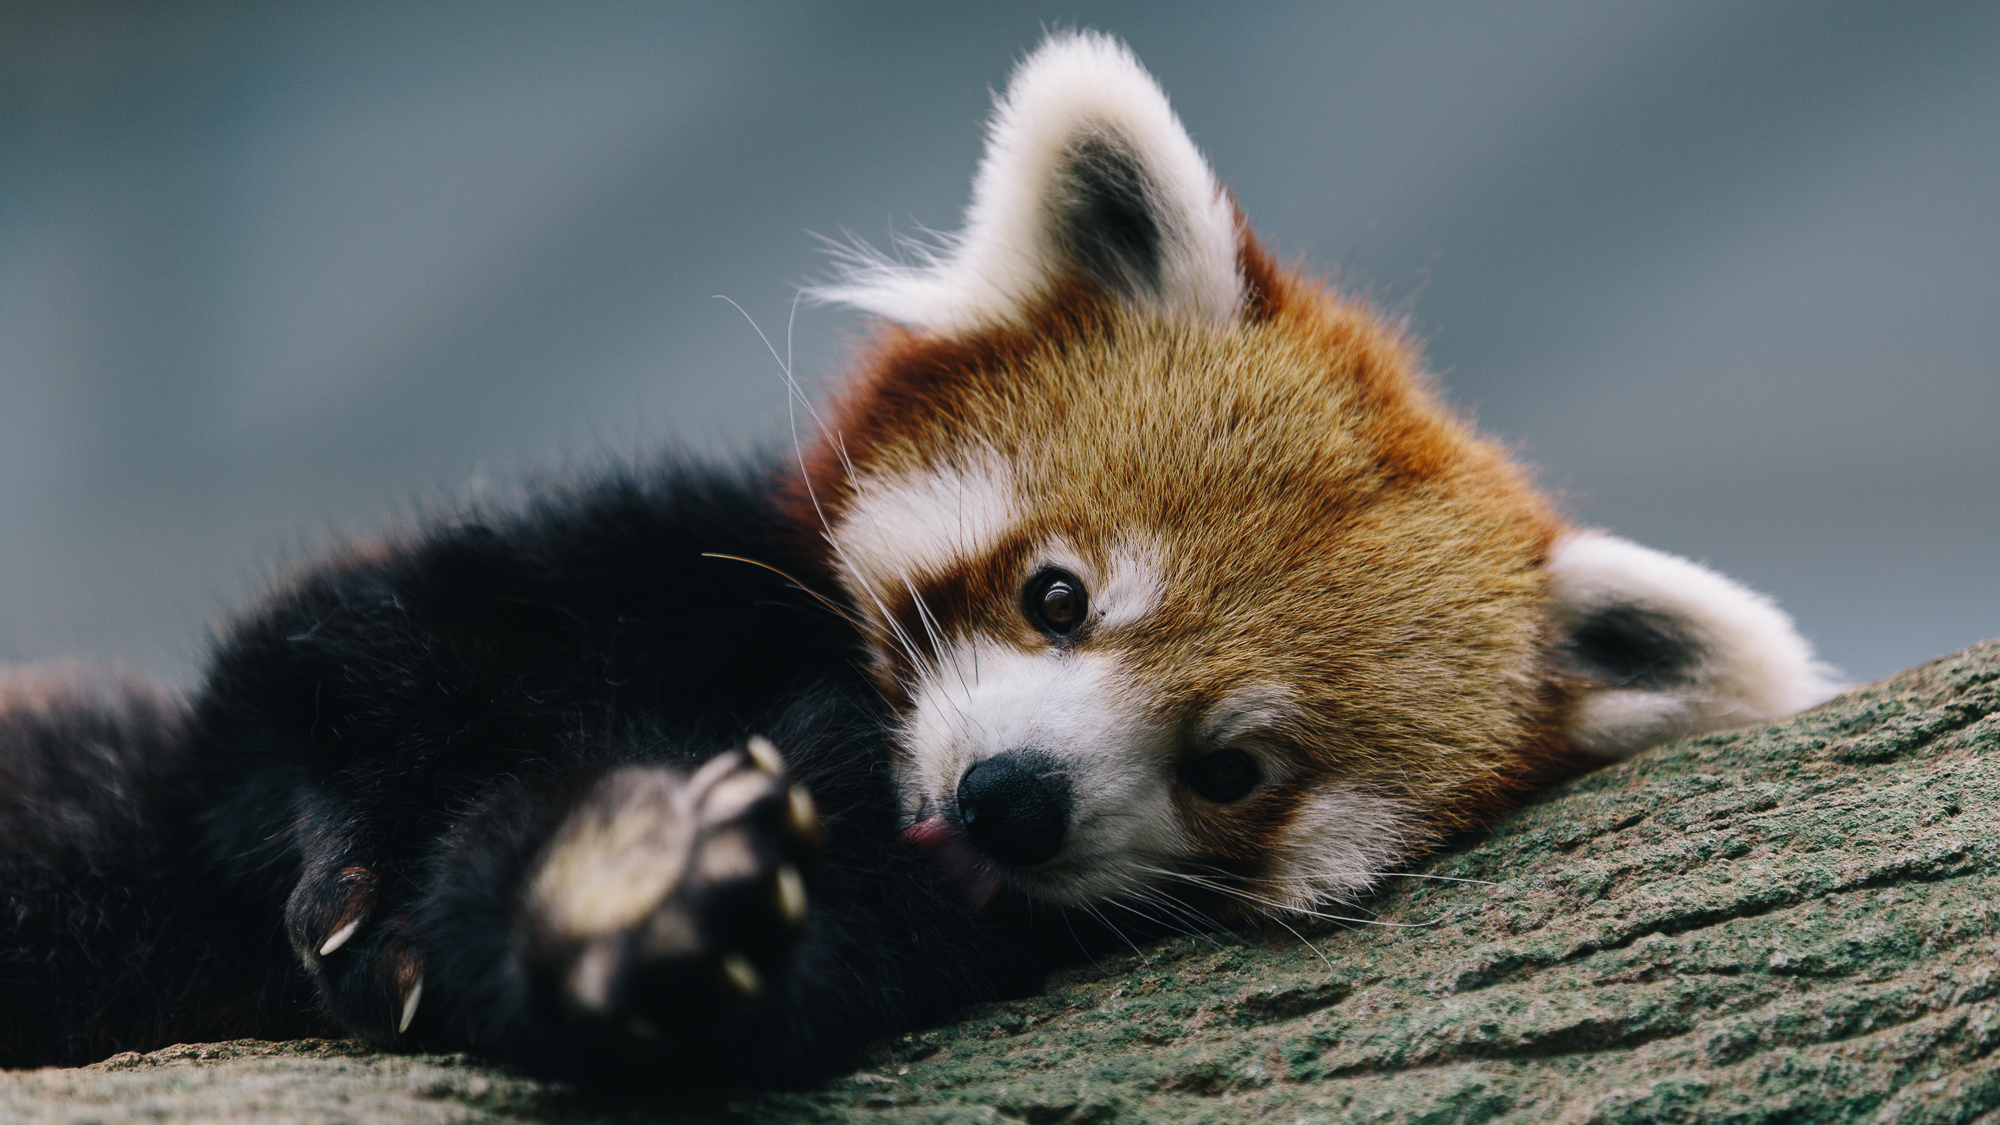 Download mobile wallpaper Animal, Panda, Cute, Red Panda for free.